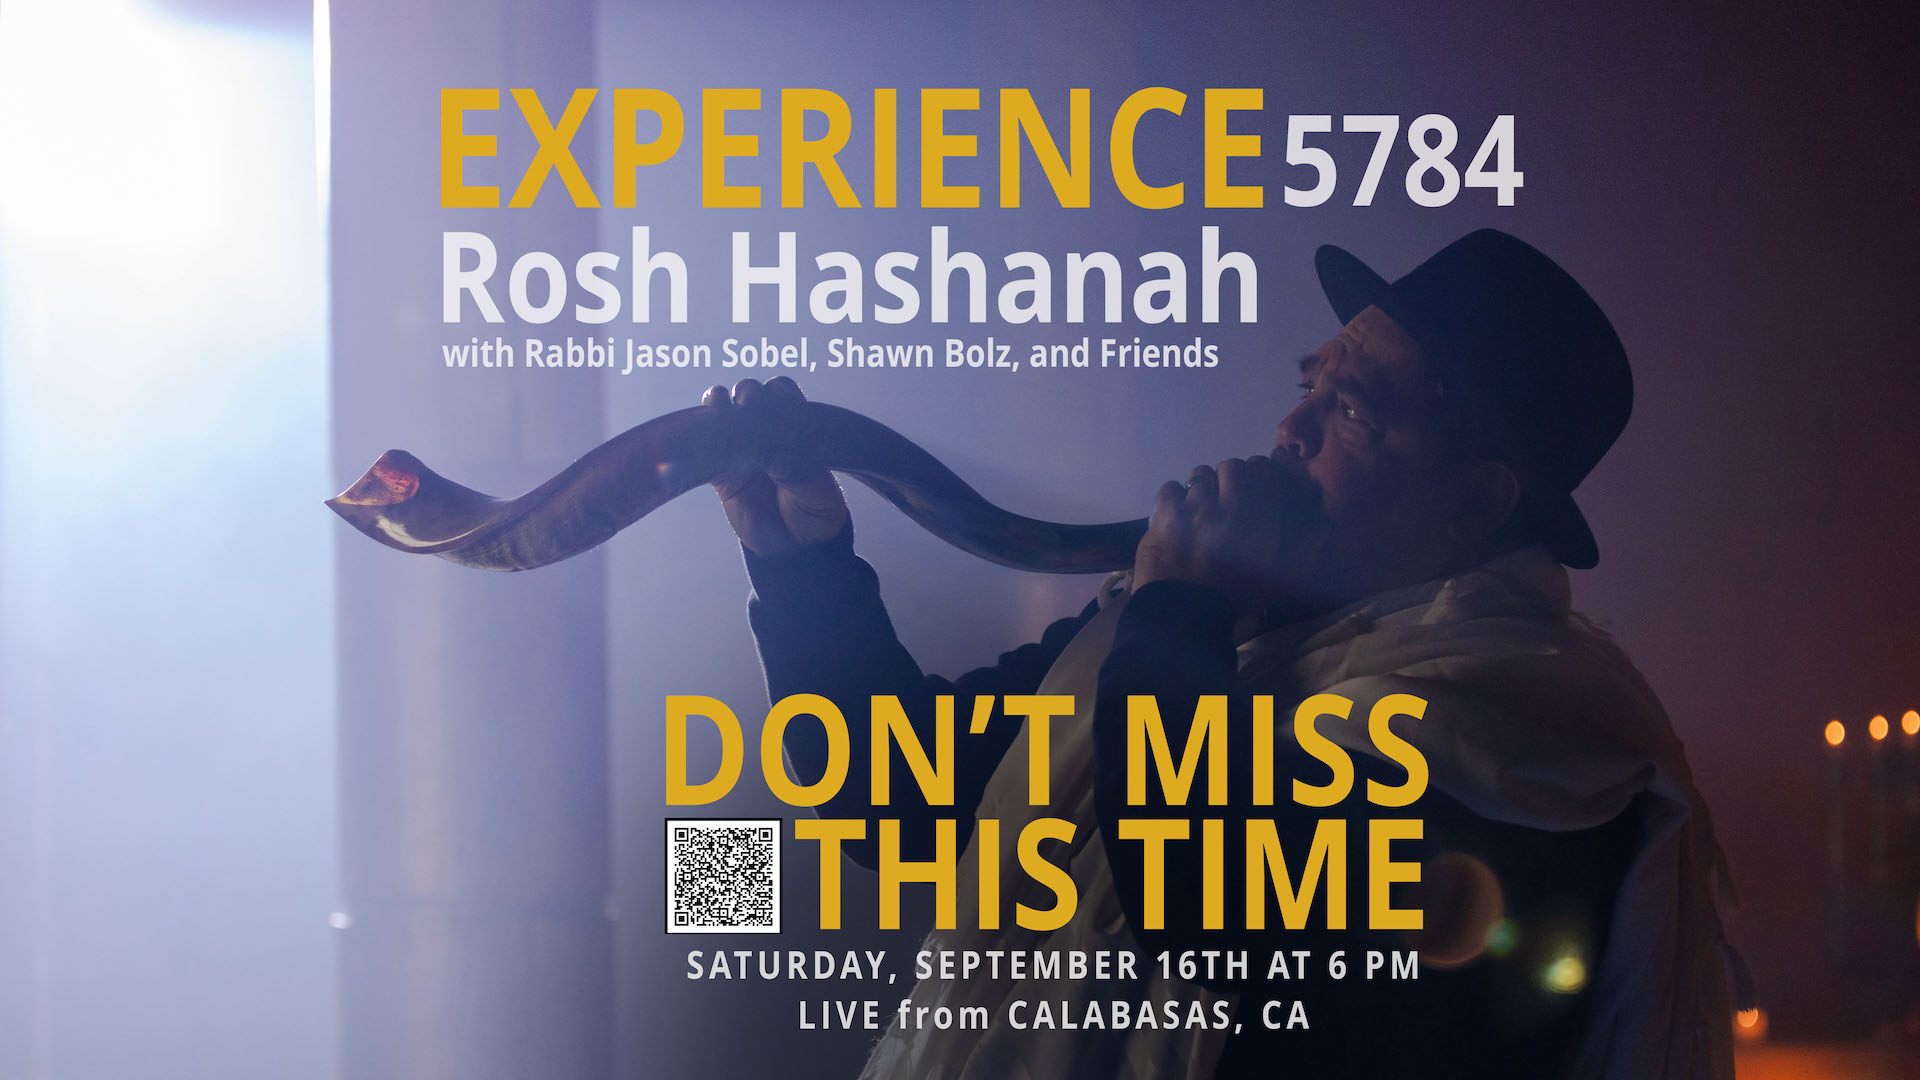 Rosh Hashanah 5784 Event Rabbi Jason Sobel